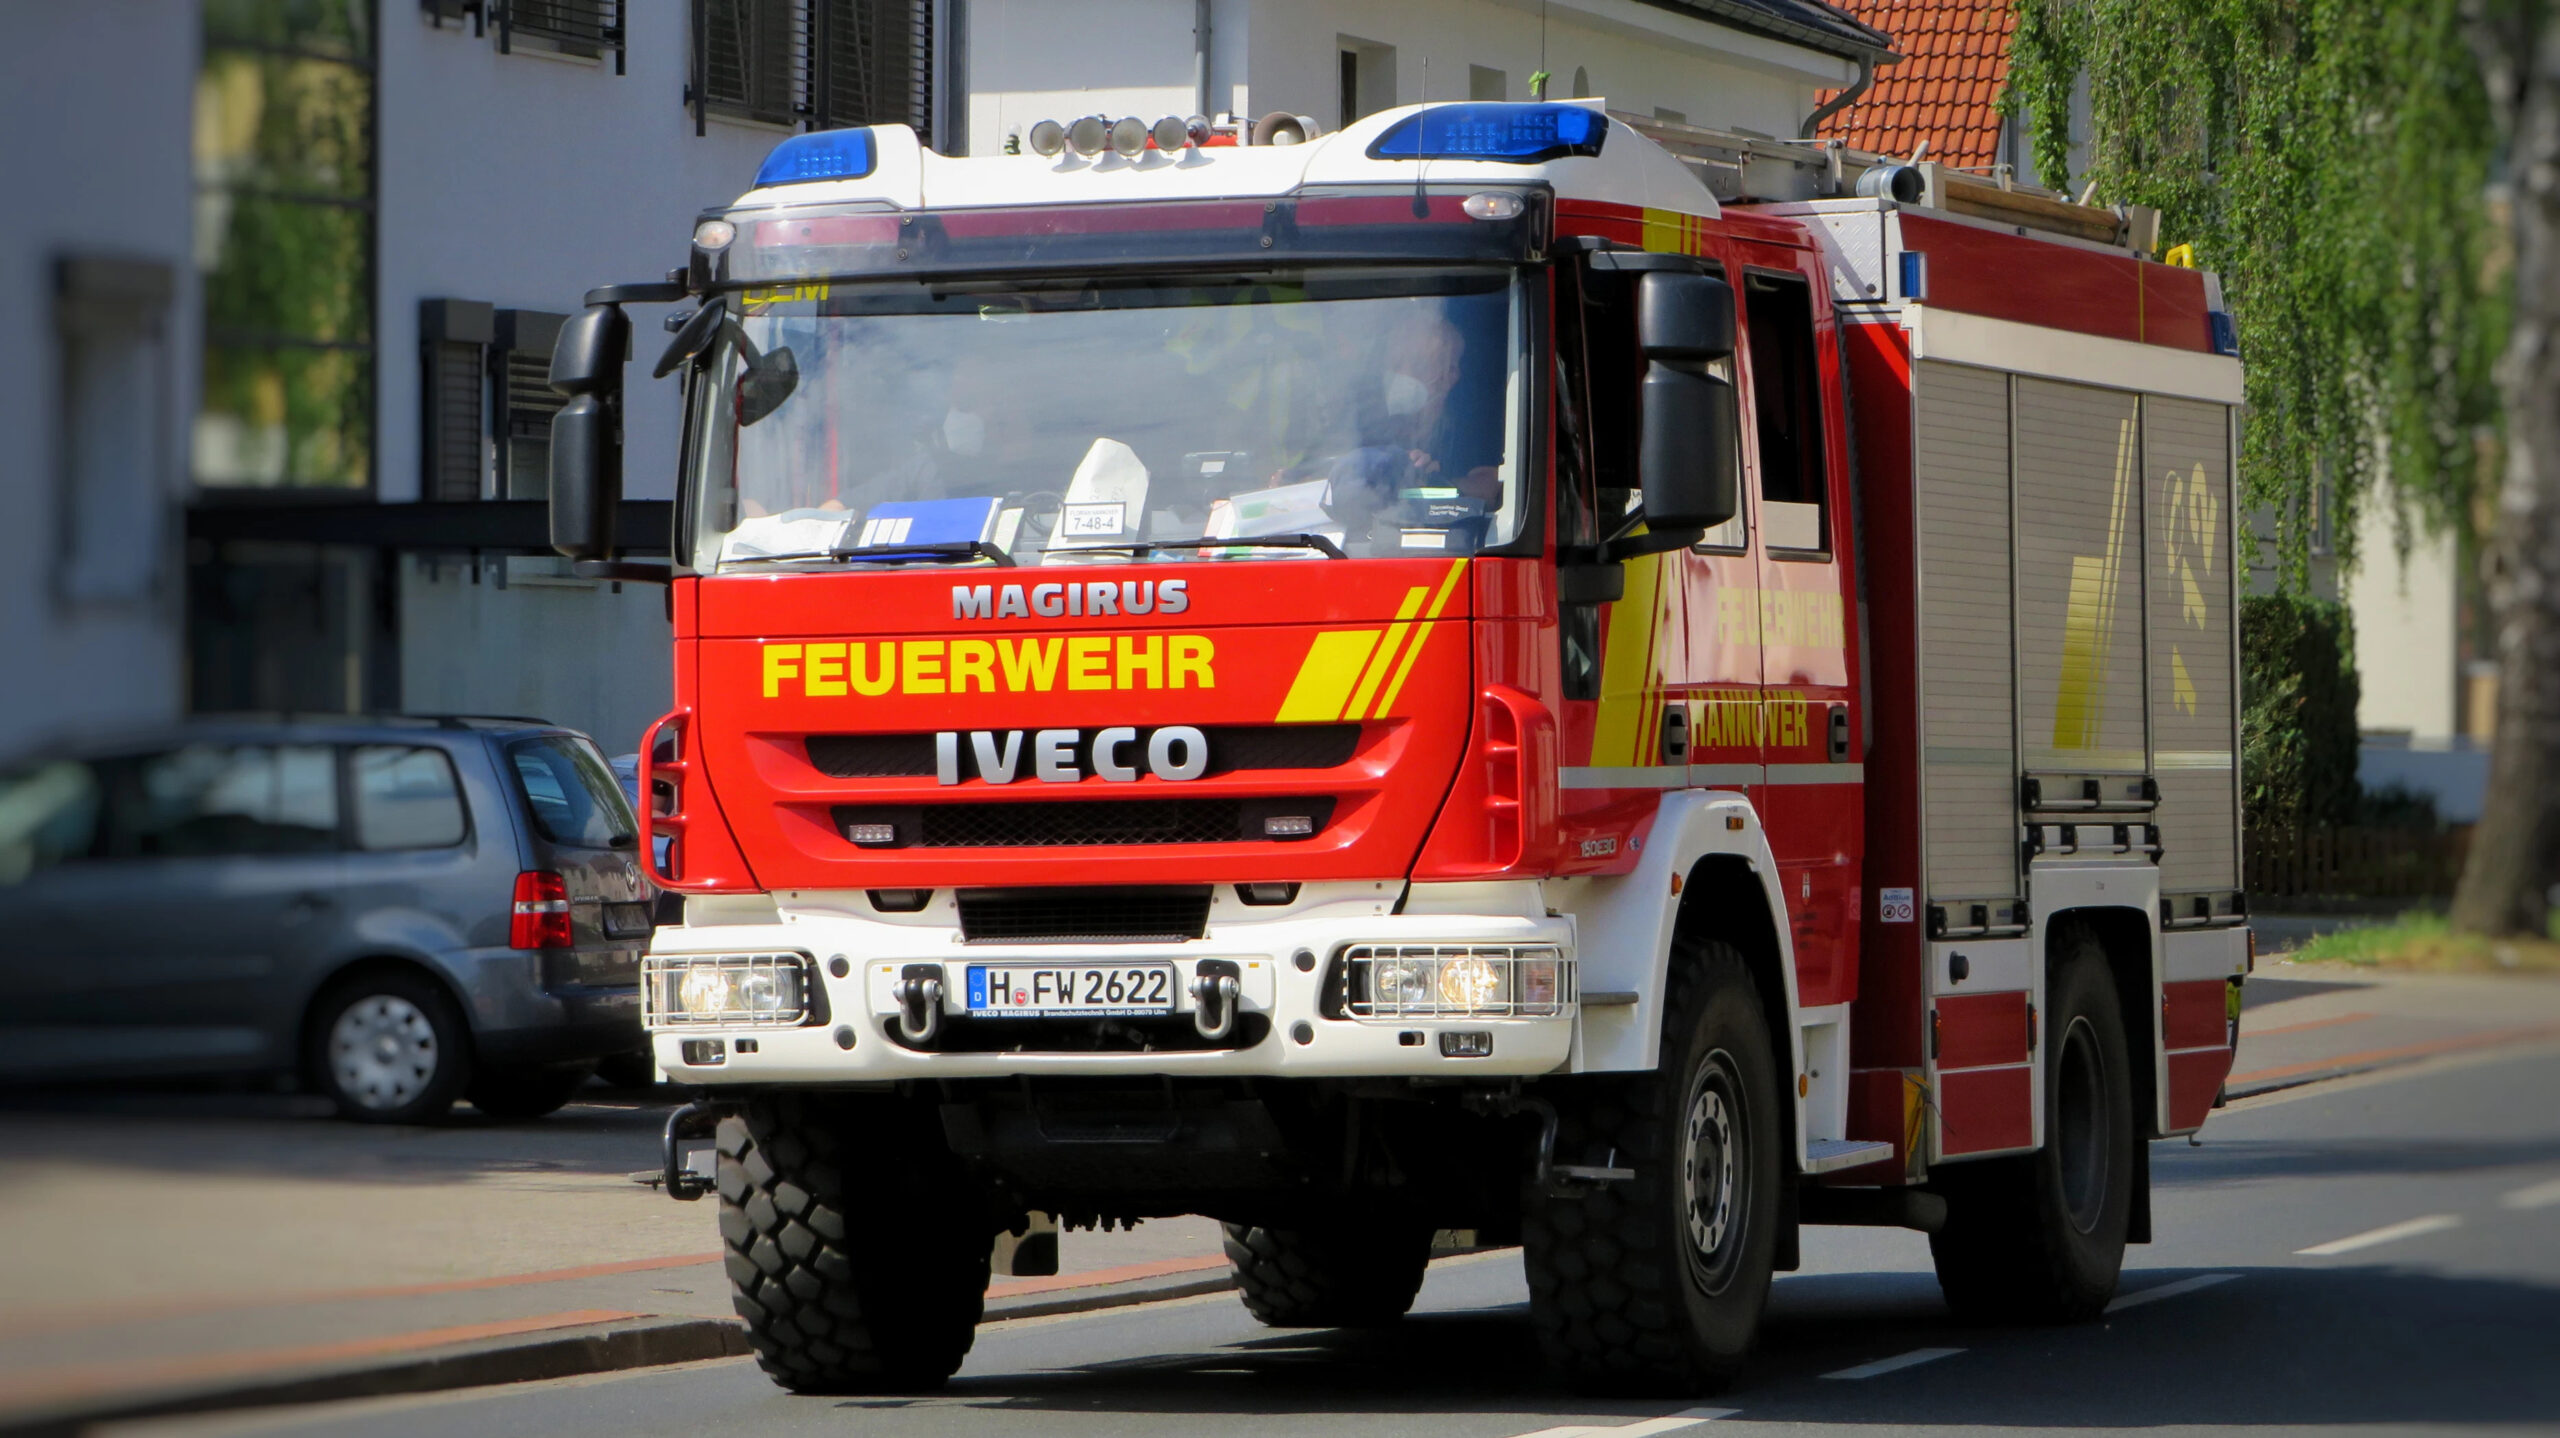 Erfurt: Feuerwehr rettet Bewohner, aber Haustier stirbt im Brand